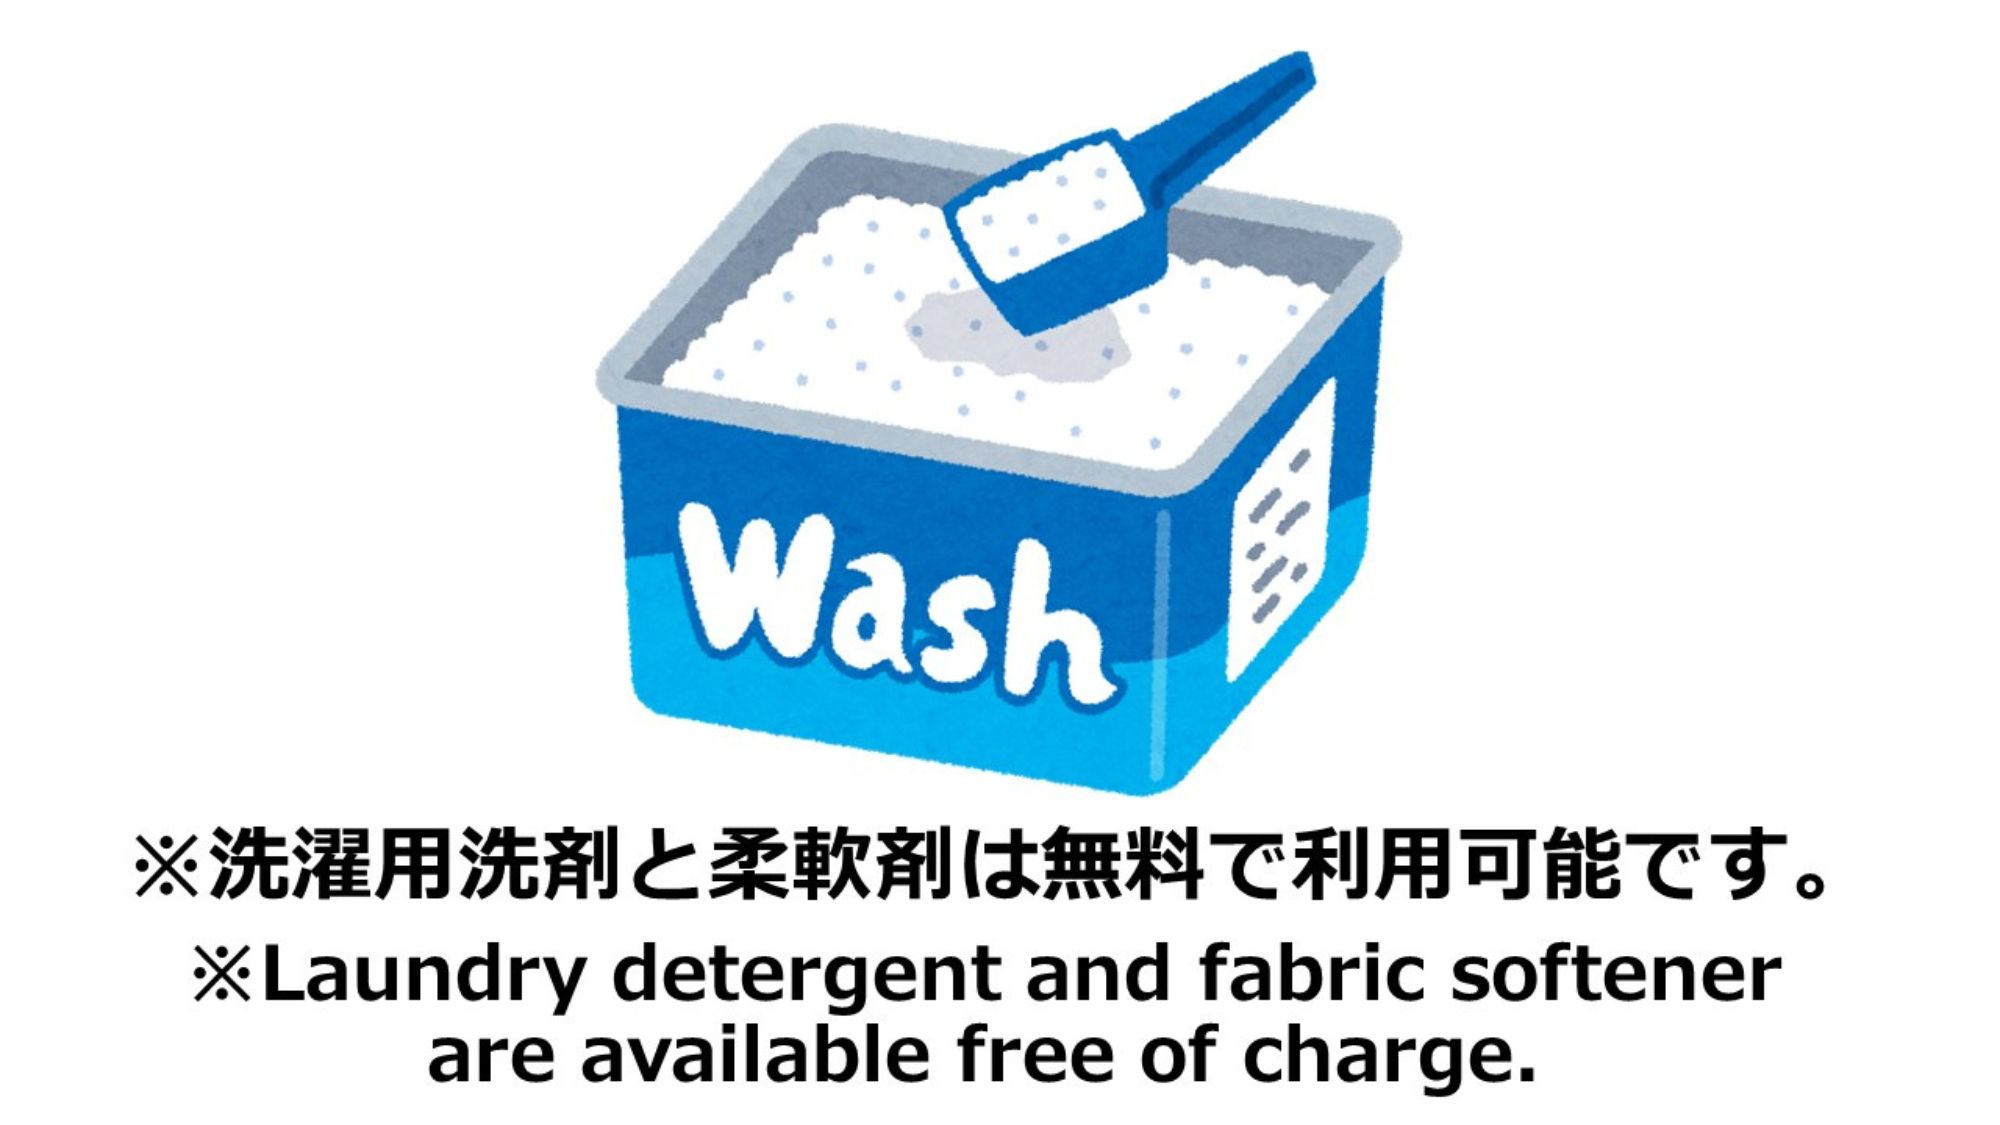 洗濯用洗剤と柔軟剤は無料で利用可能です。